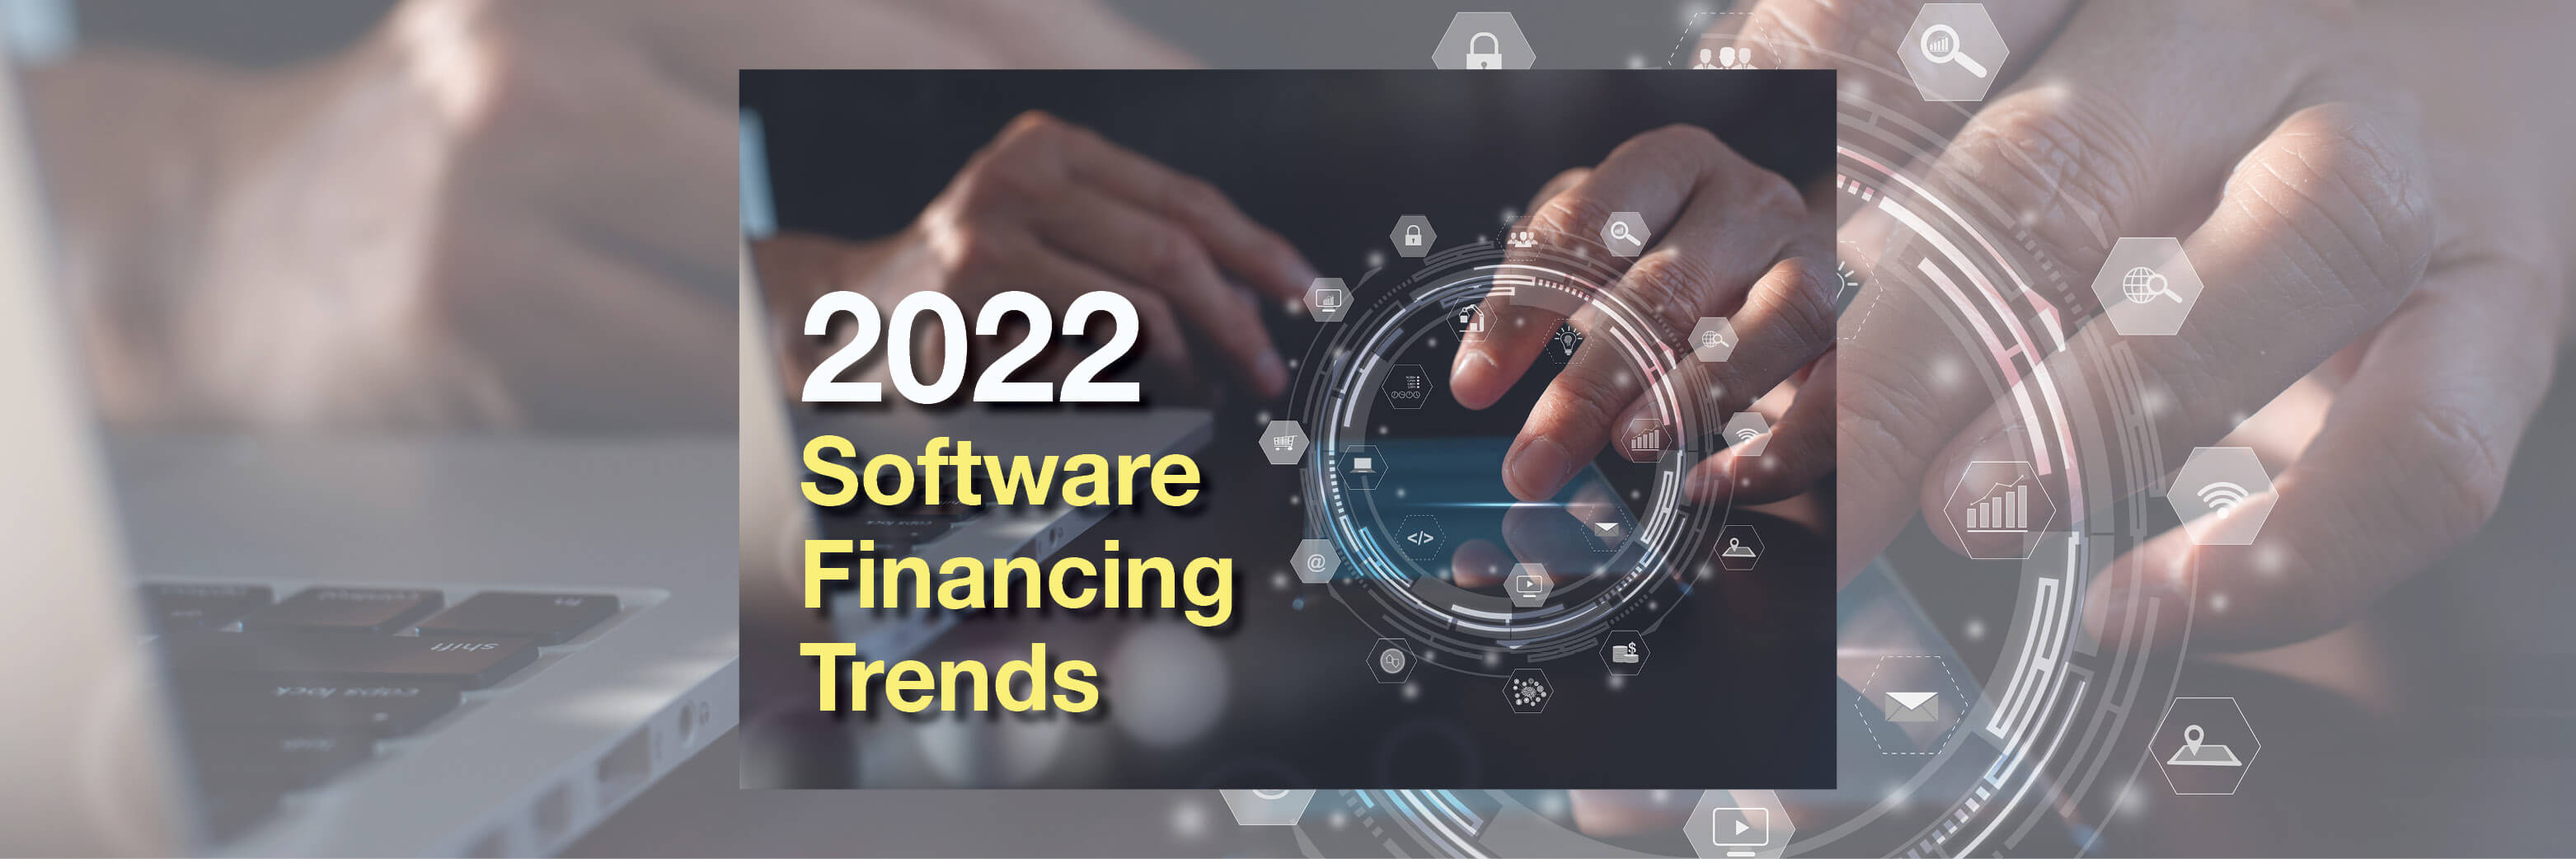 2022 Software Financing Trends